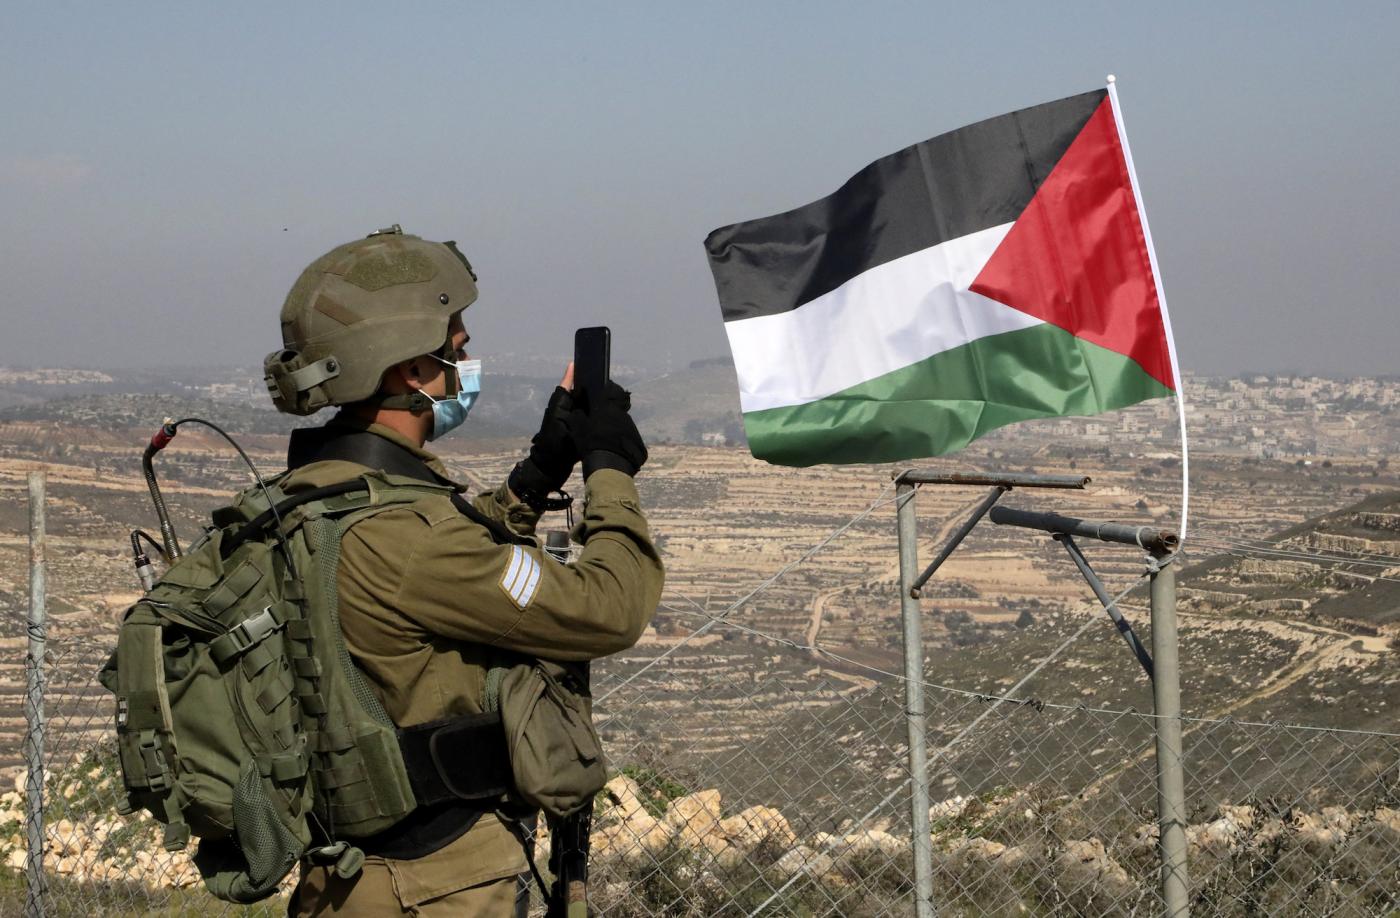 Il Consiglio di Sicurezza fallisce nuovamente, nessuna dichiarazione congiunta per un cessate il fuoco in Palestina